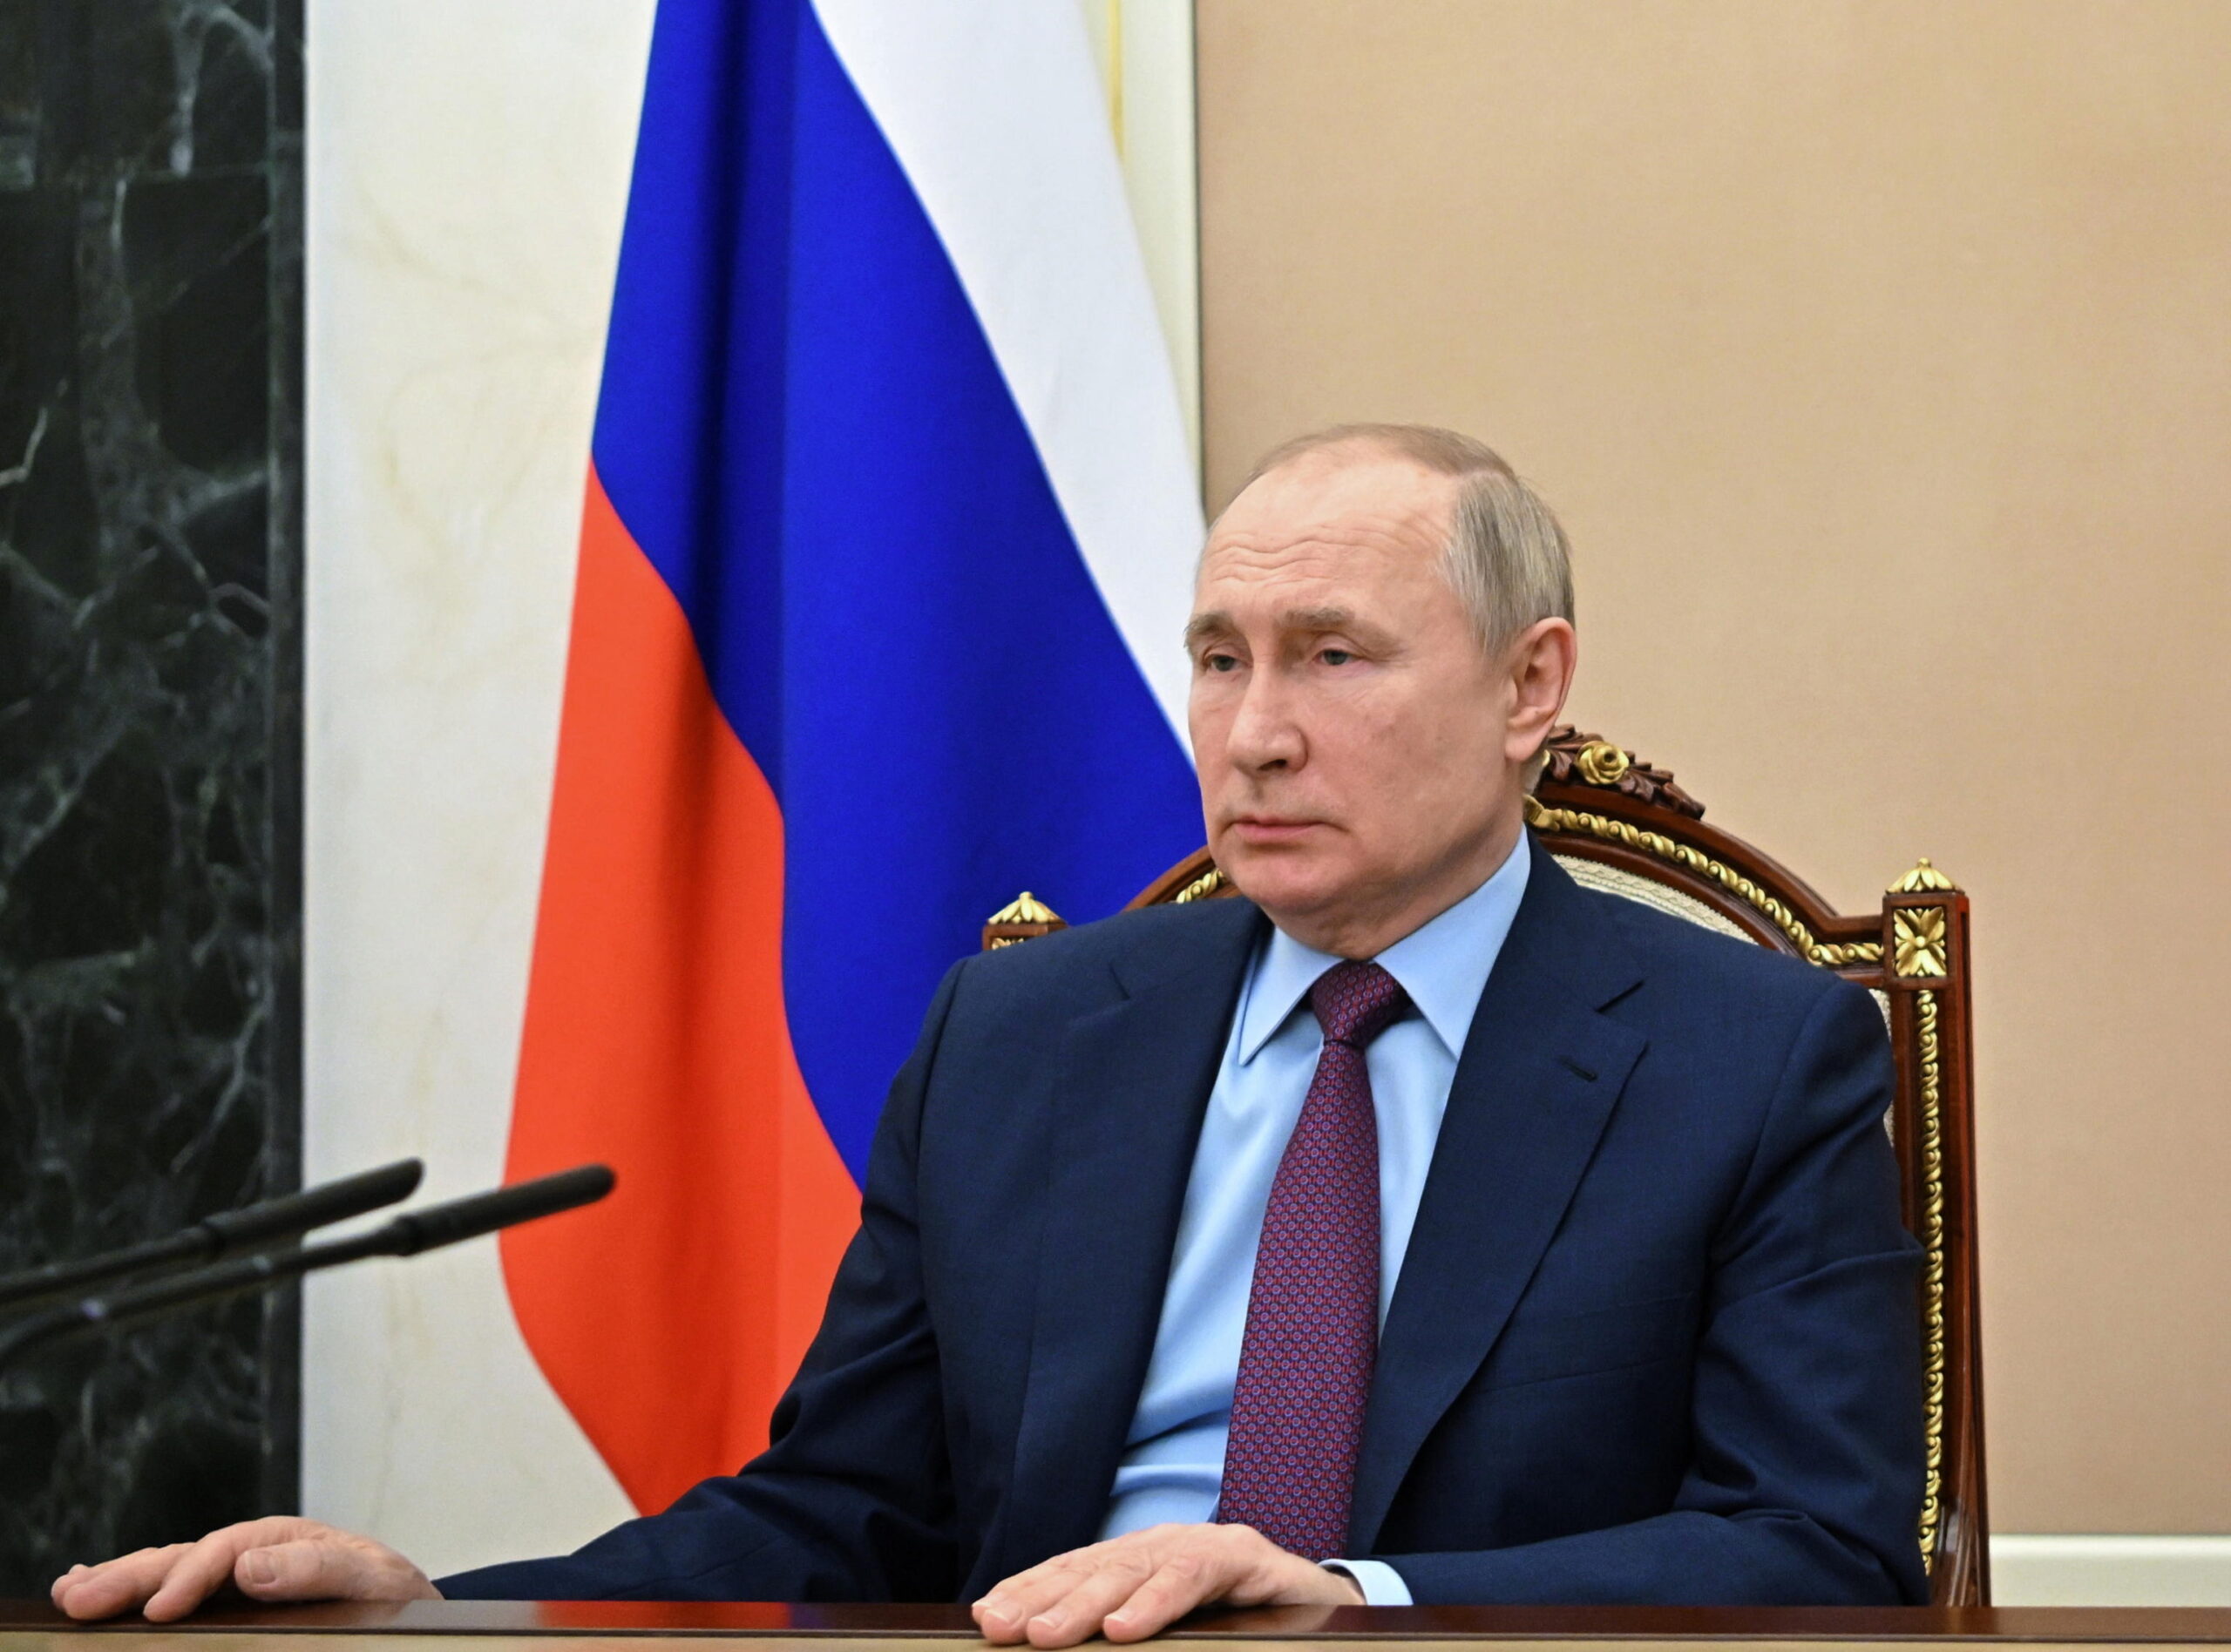 Putin parla agli imprenditori russi: “non conviene sanzionarci”